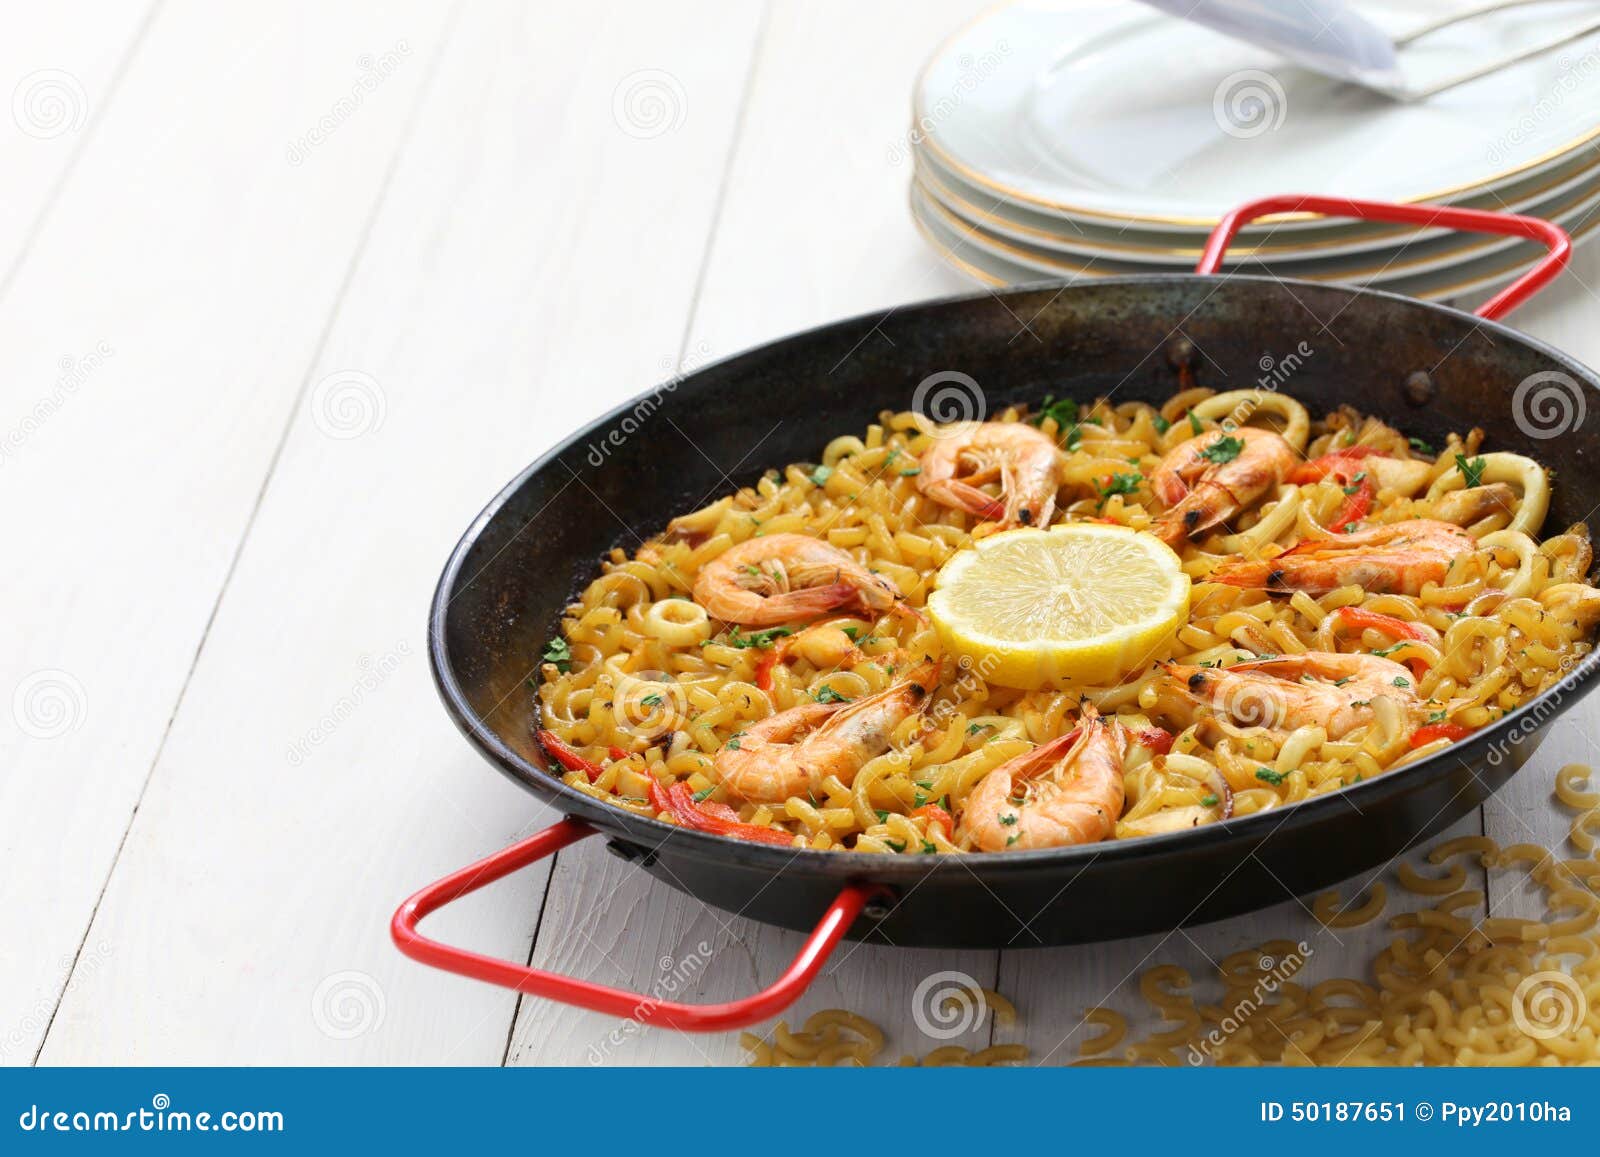 fideua de marisco, seafood pasta paella, spanish cuisine